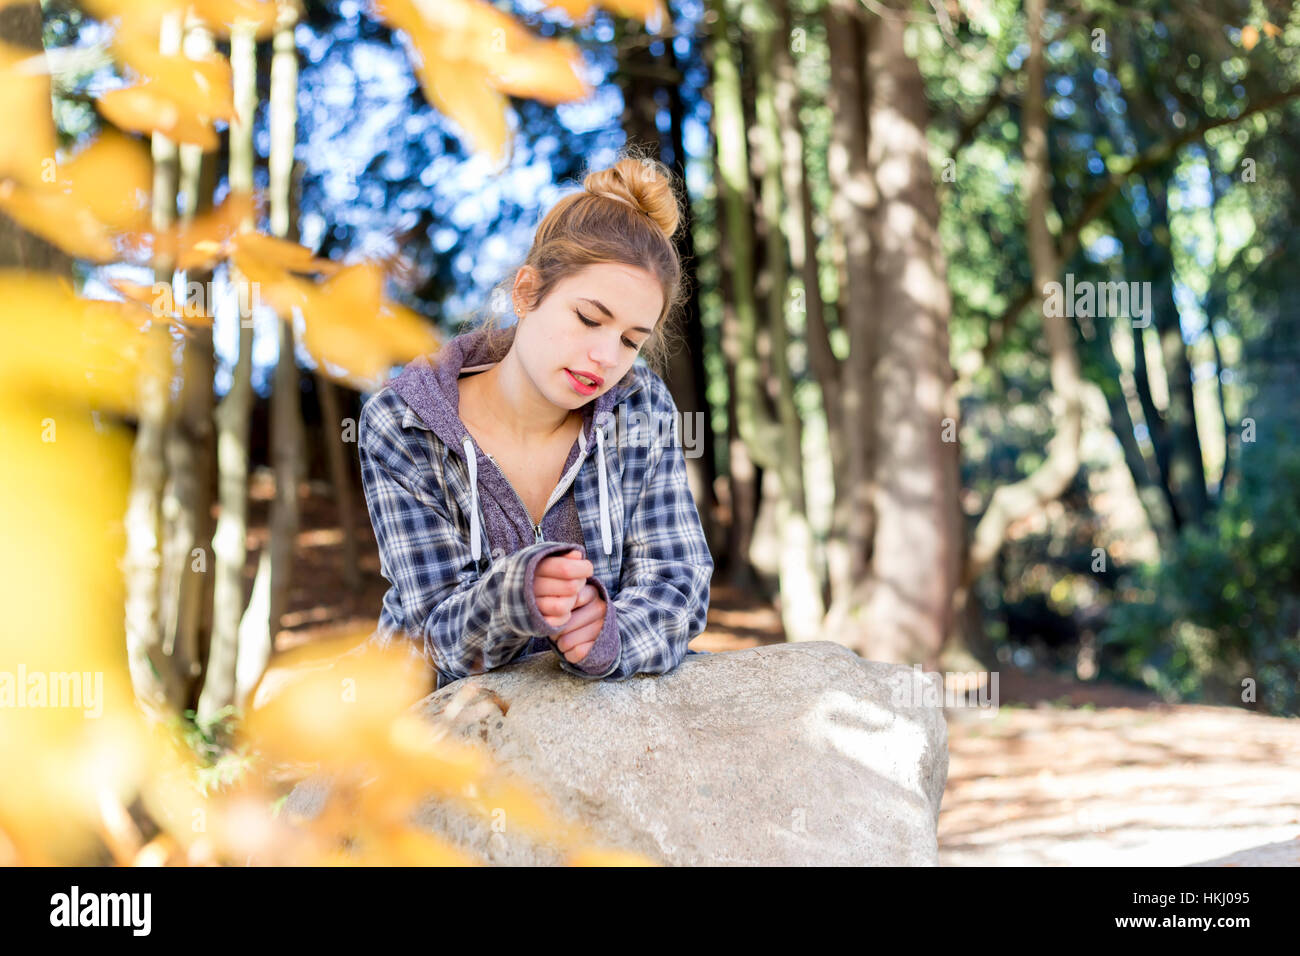 Este joven adolescente cuelga fuera solo en un parque, sentado sobre una roca en una posición desacoplada del pensamiento reflexivo para ella Foto de stock